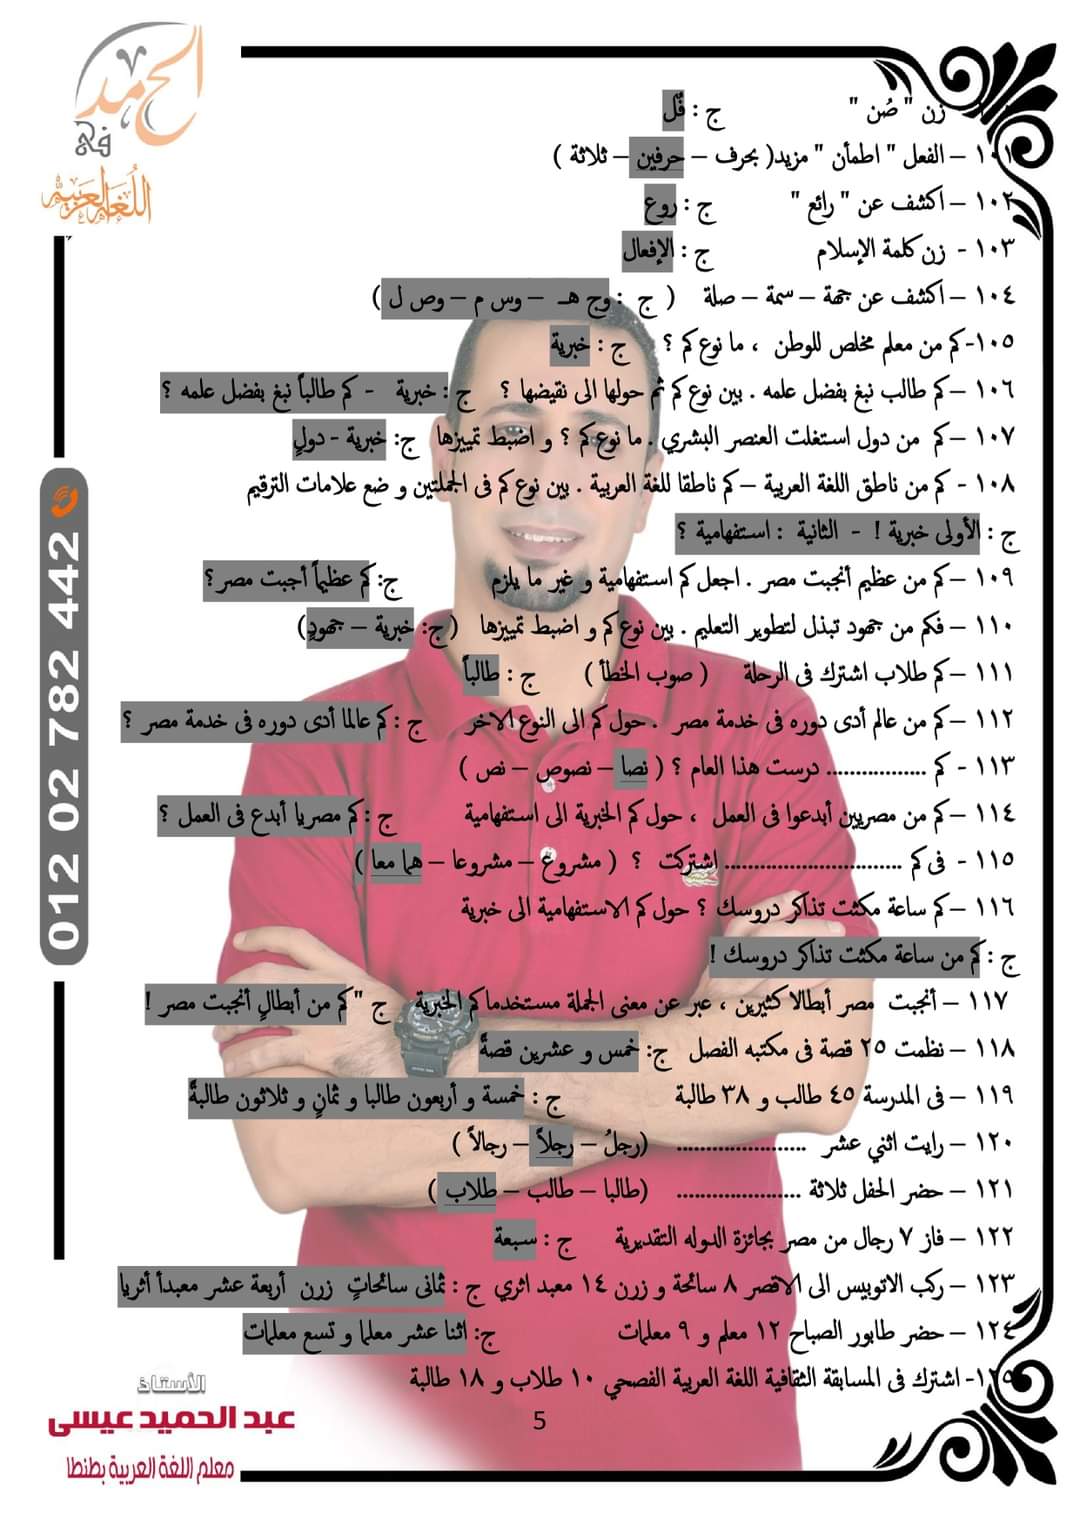 توقعات امتحان اللغة العربية الصف الثاني الاعدادي الترم الثاني كل المحافظات لمستر عبد الحميد عيسى